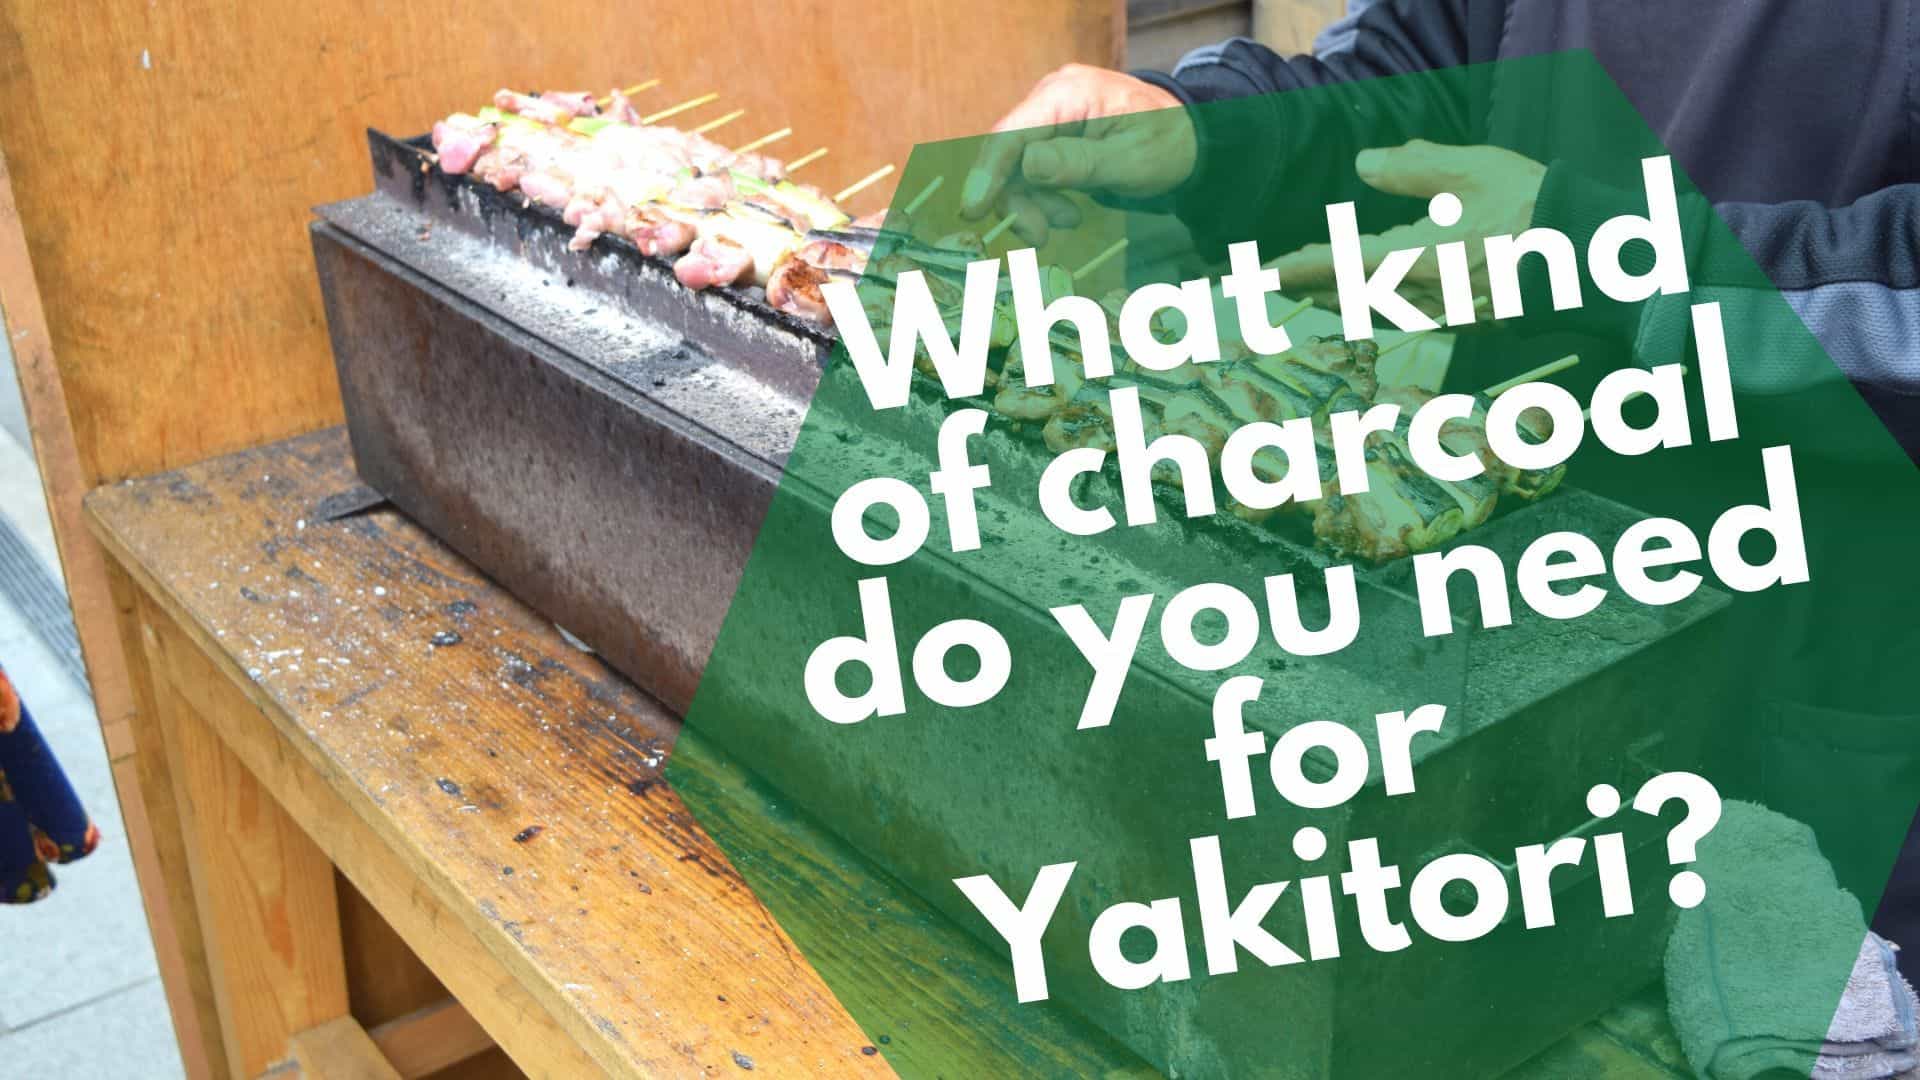 U hloka mashala a mofuta ofe bakeng sa Yakitori?